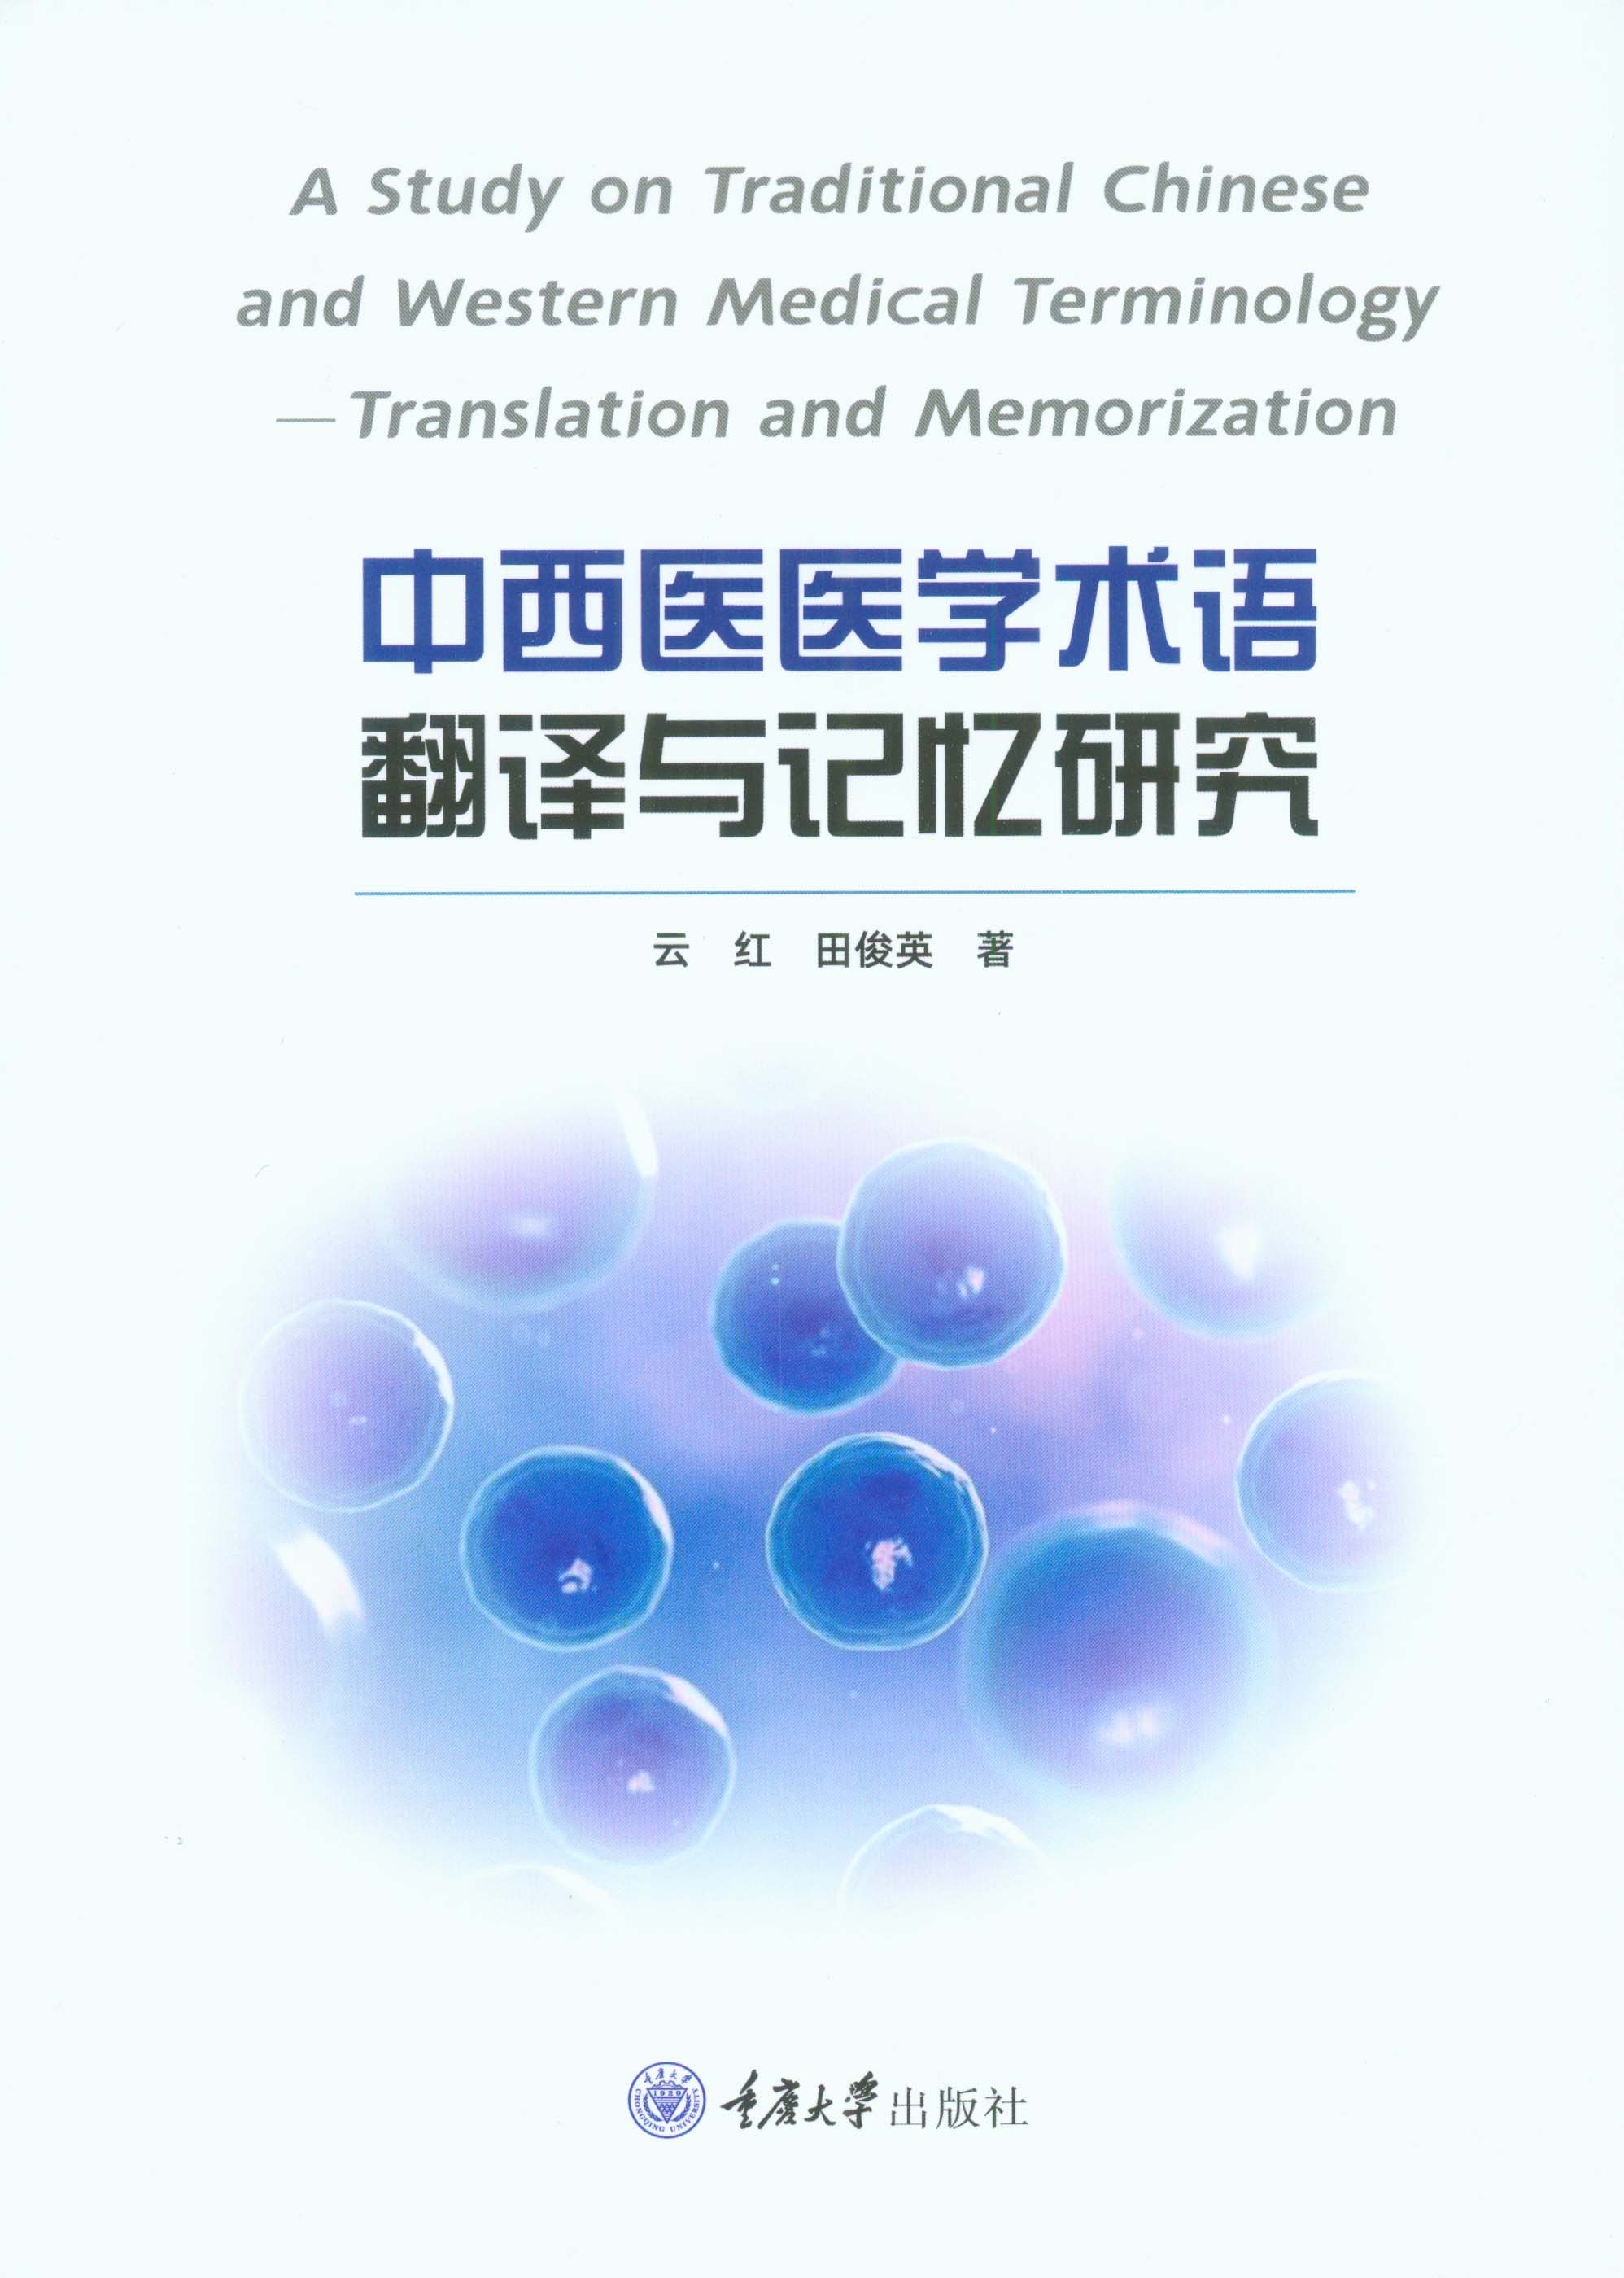 中西医医学术语翻译与记忆研究 ： 英文